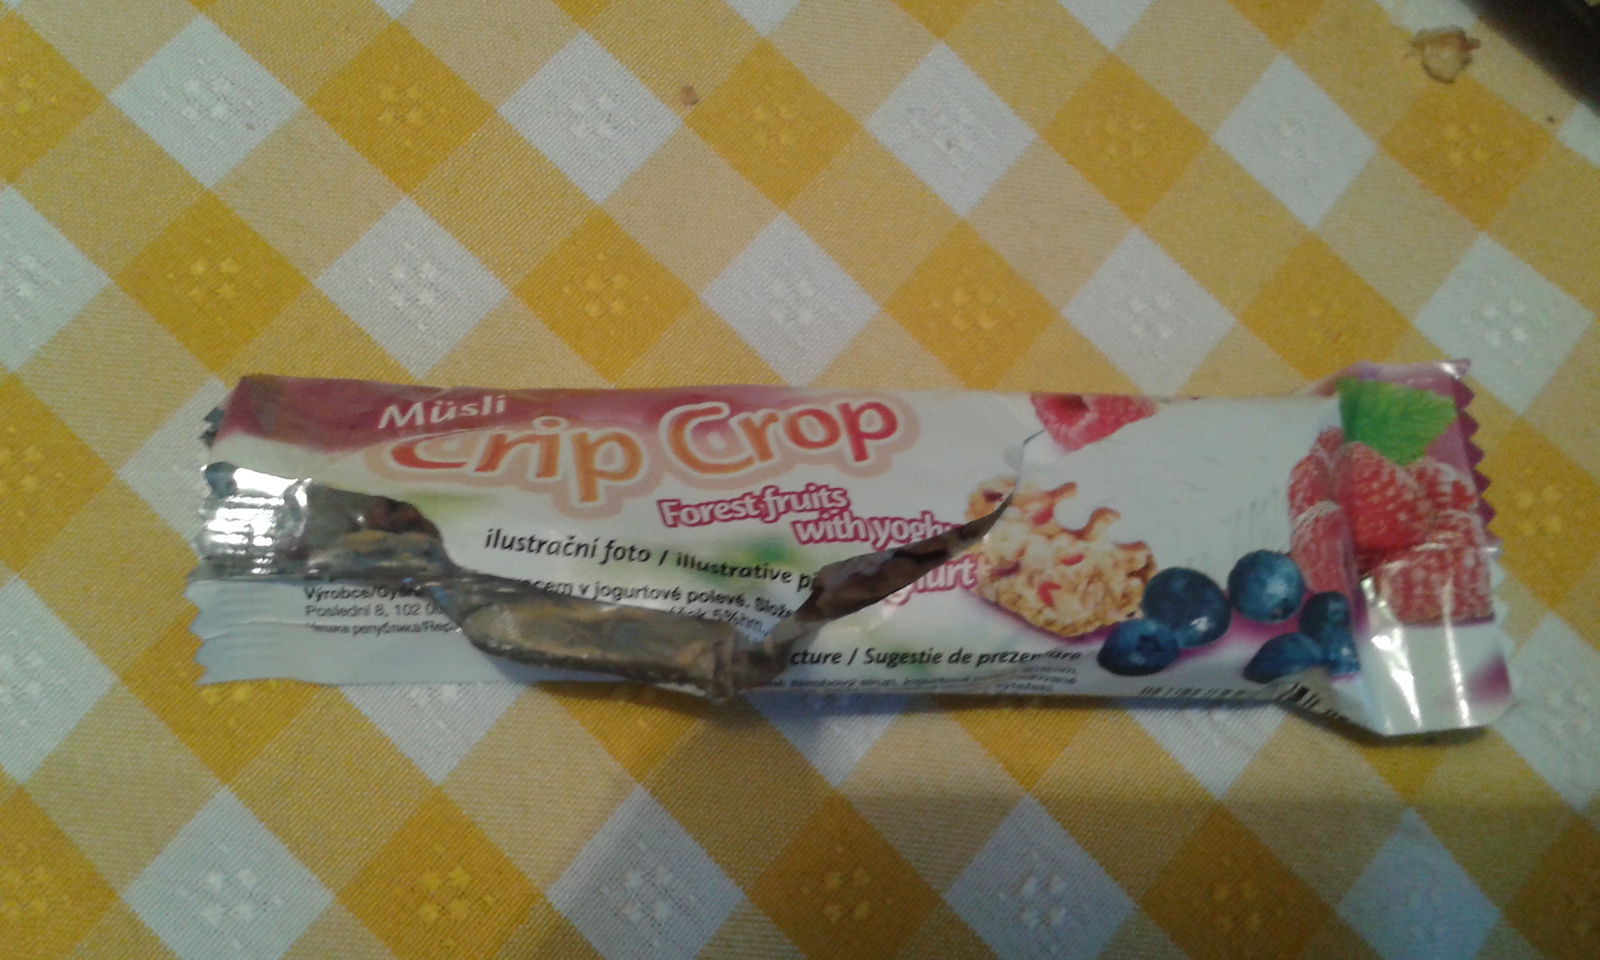 Crip crop müzli